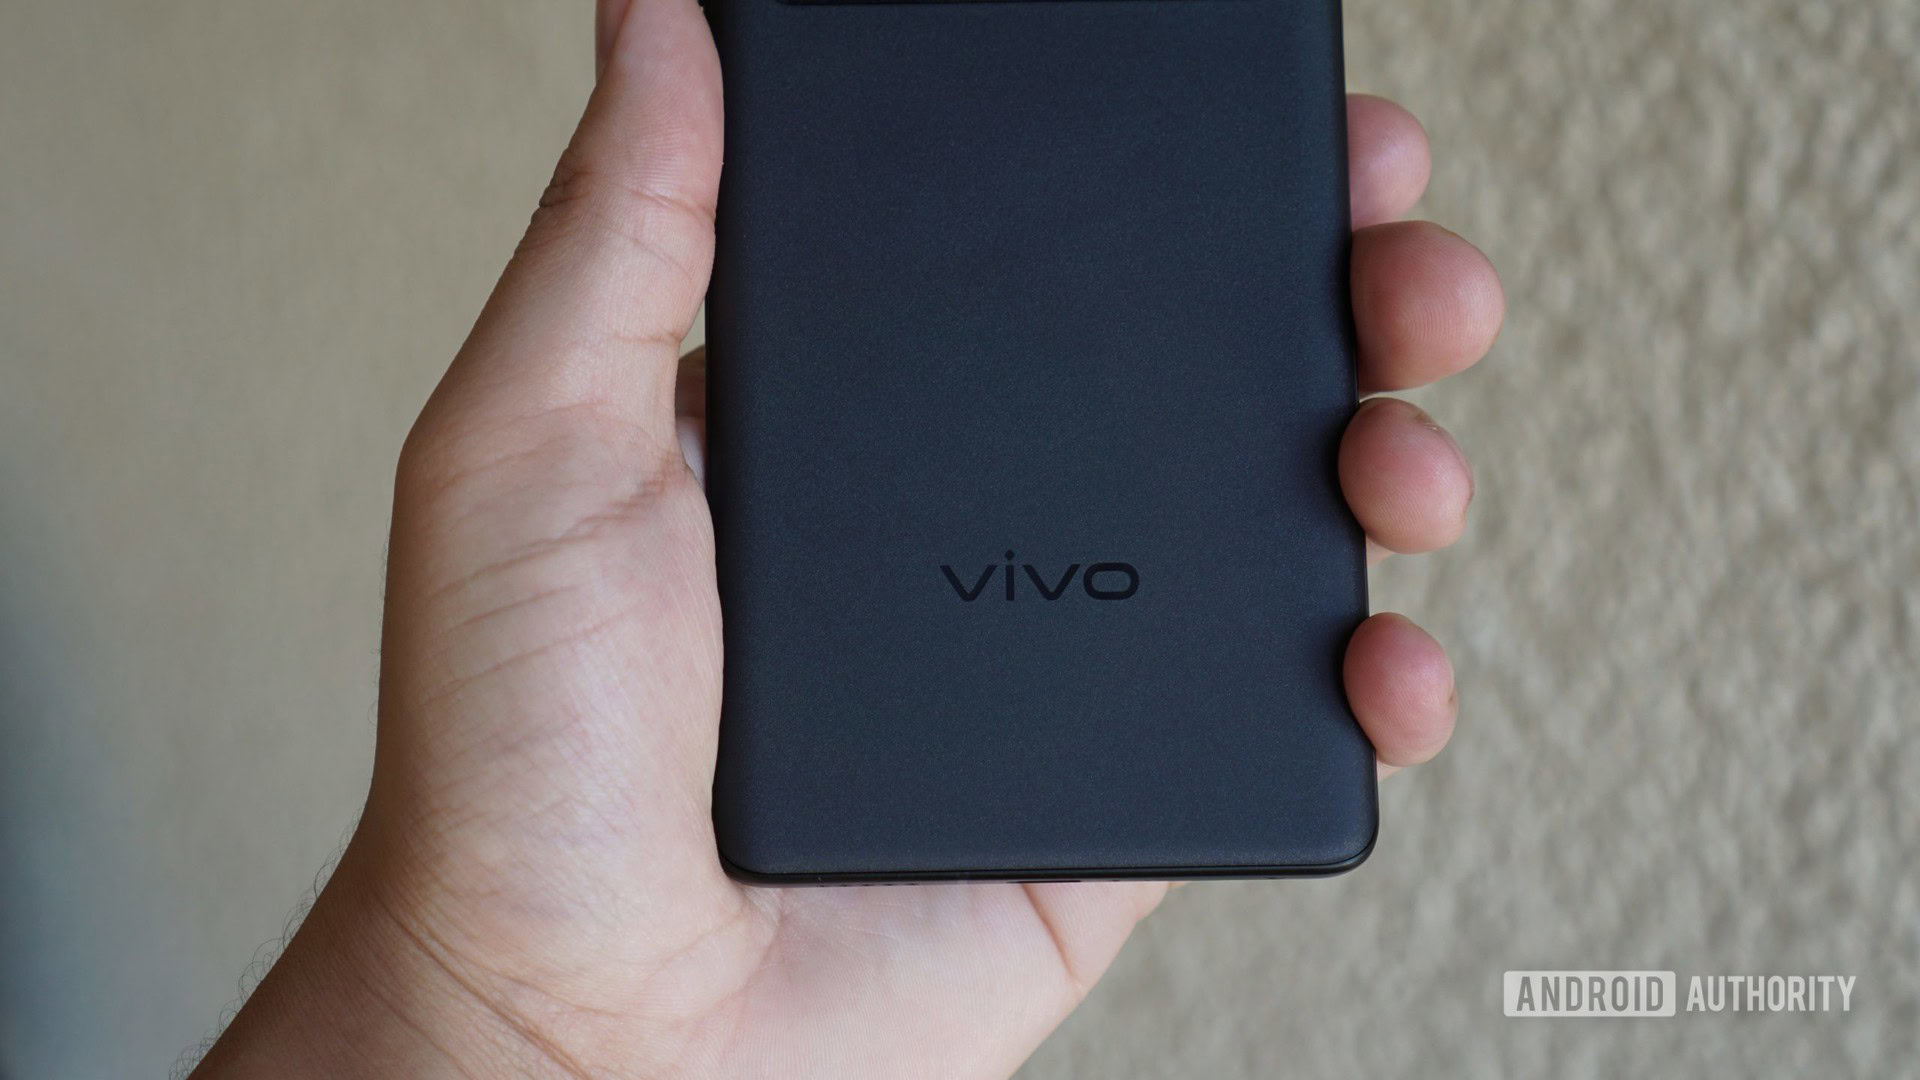 The Vivo logo on the X70 Pro Plus.